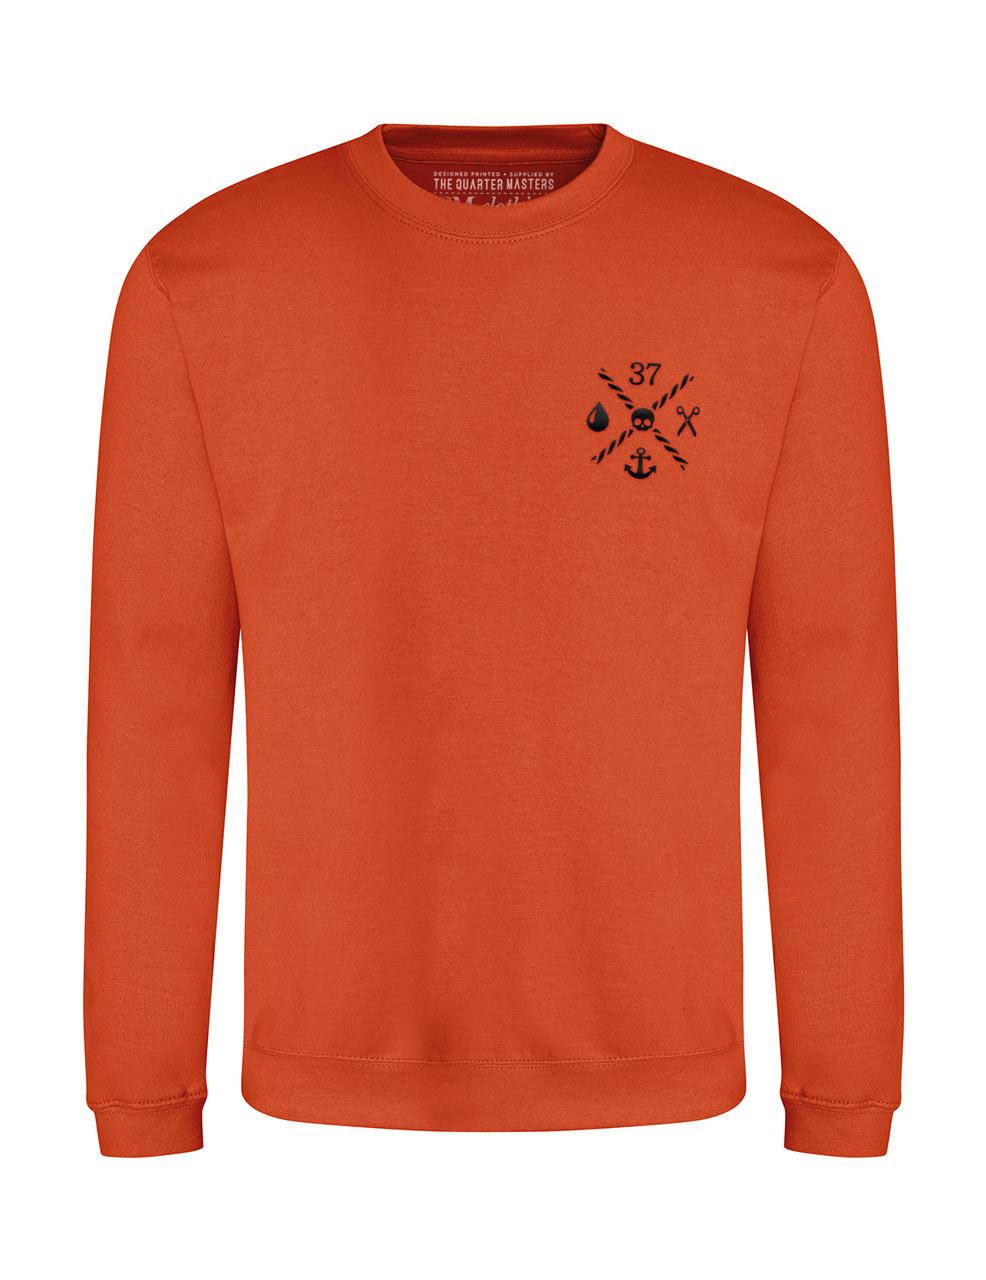 THE QUARTER MASTERS unisex sweatshirt in burnt orange